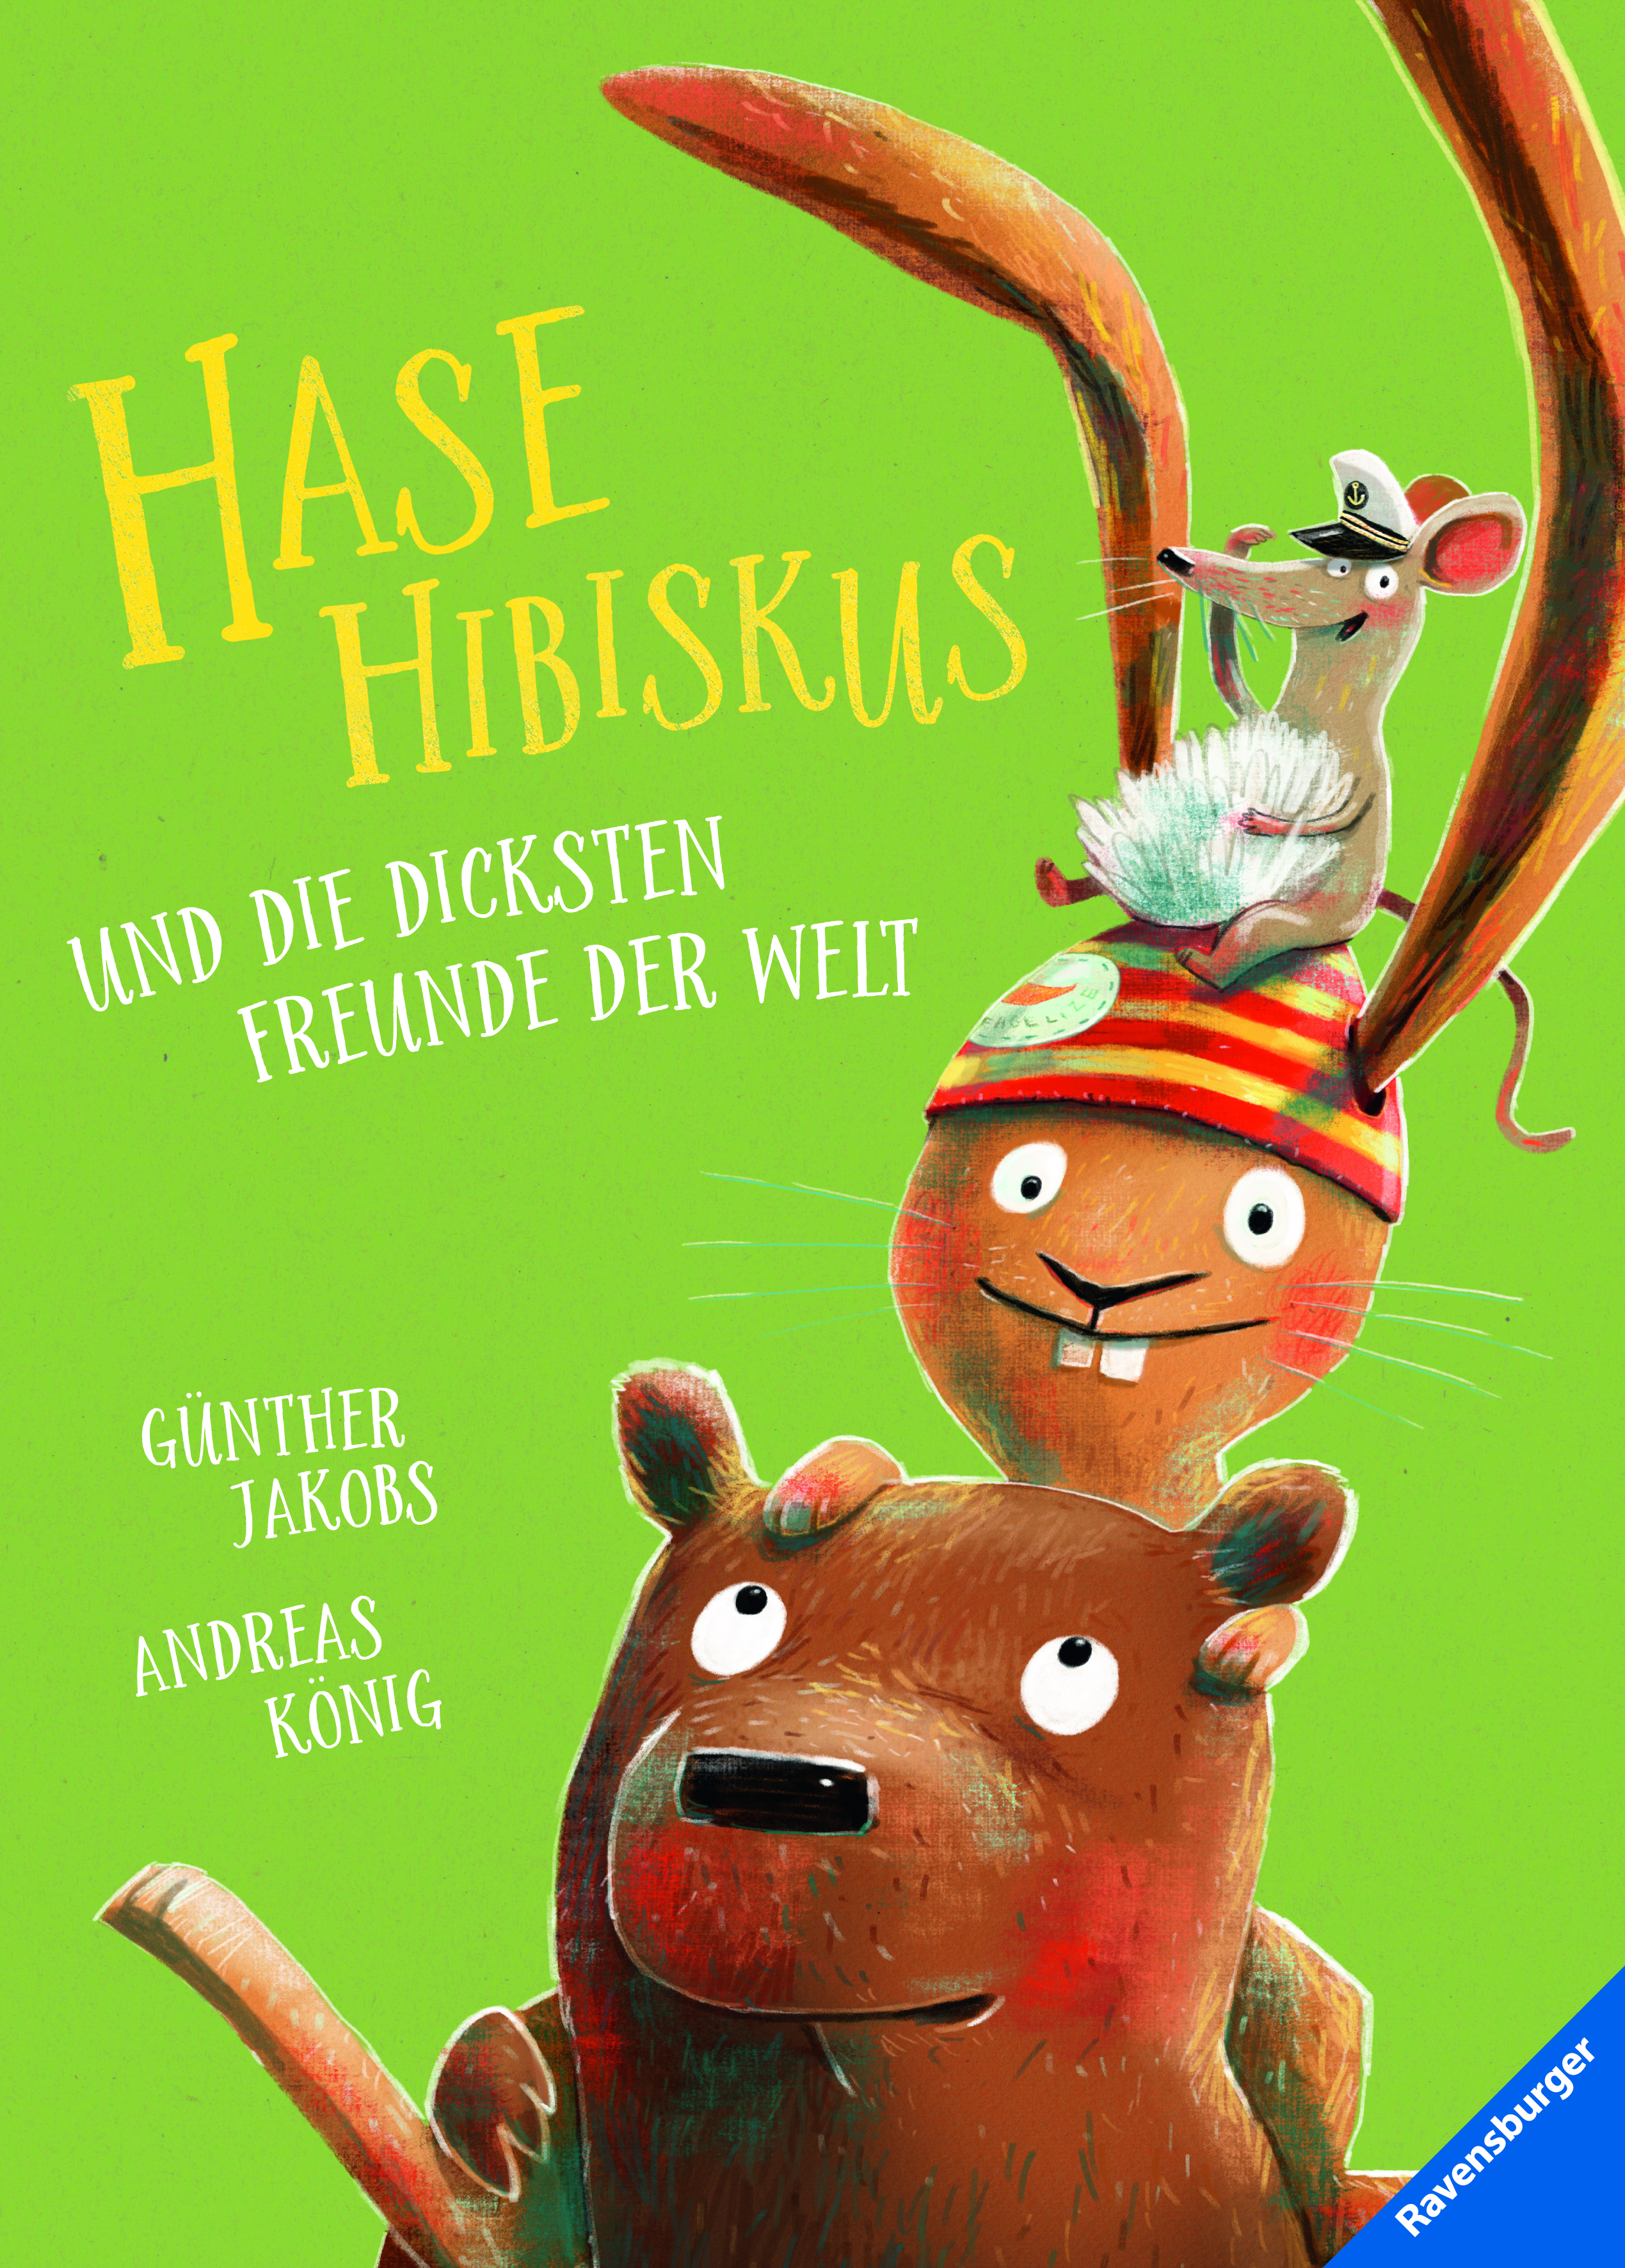 Buchcover "Hase Hibiskus und die dicksten Freunde der Welt", Ravensburger